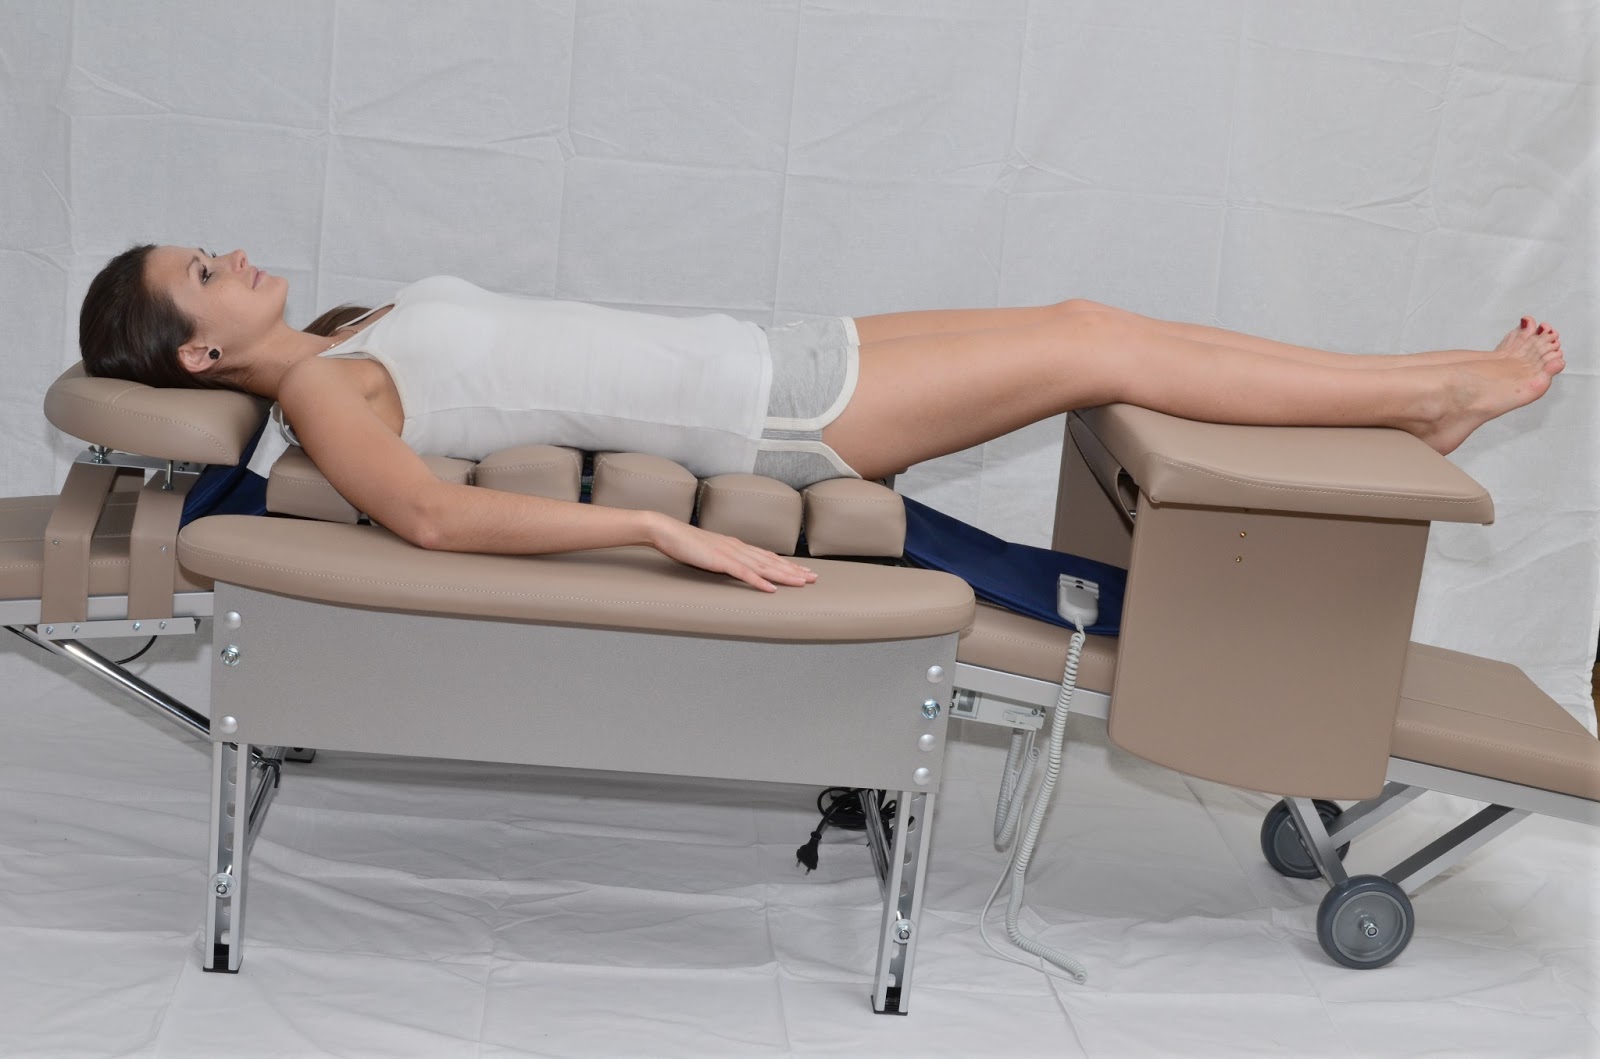 Грудастая латинская клиентка в чулках раздвинула ноги для массажиста на кушетке онлайн